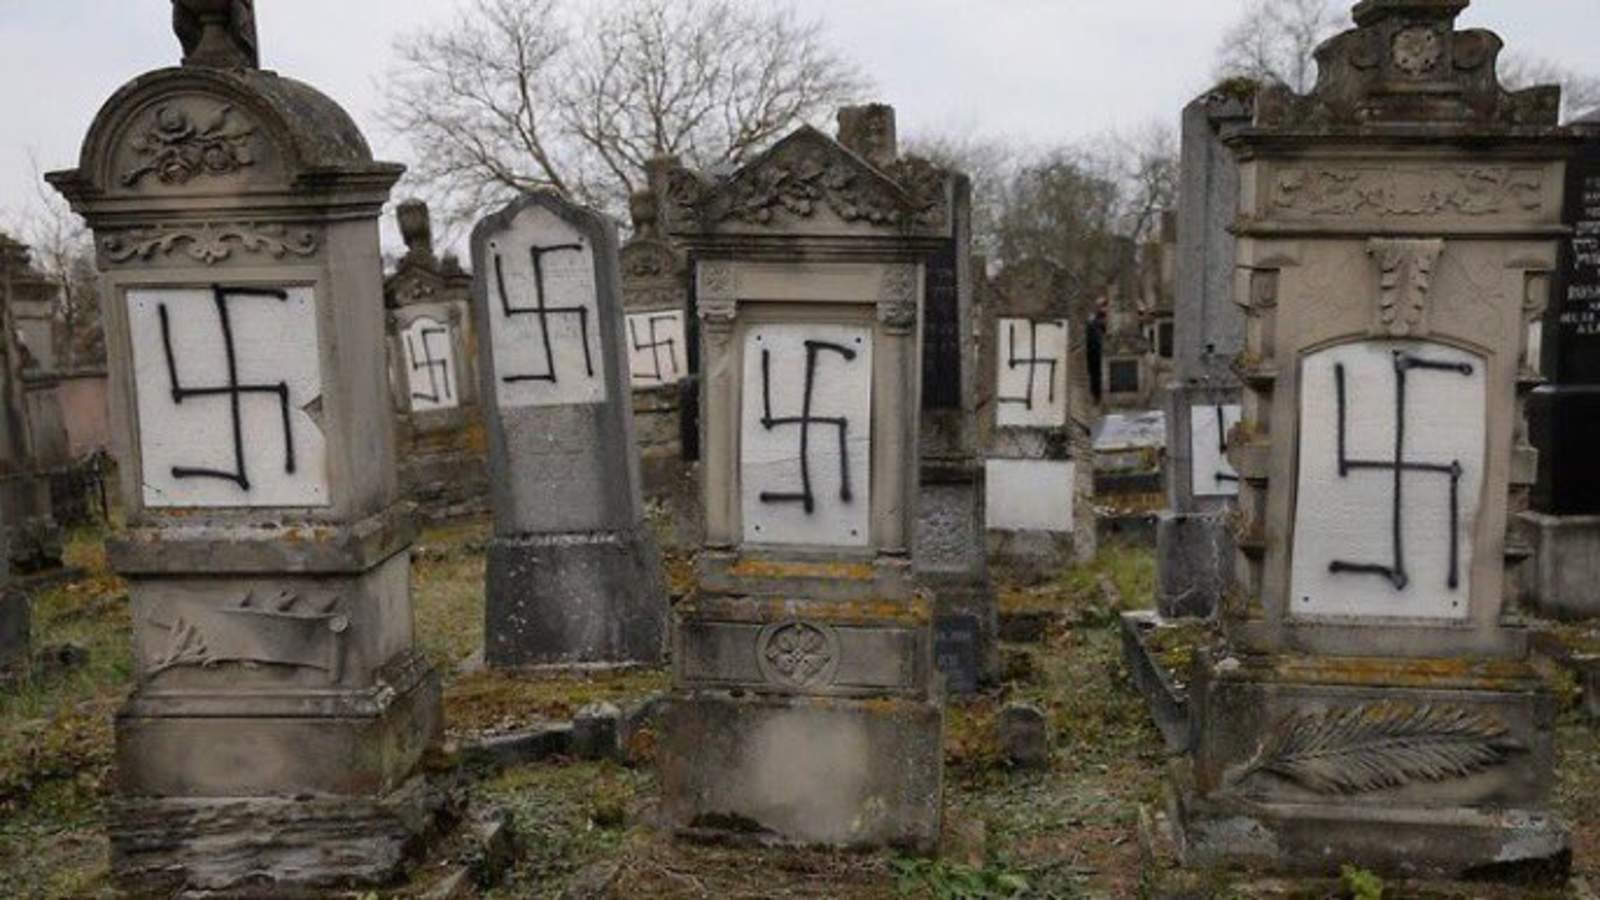 Preocupación por aumento de profanación de cementerios judíos en Europa